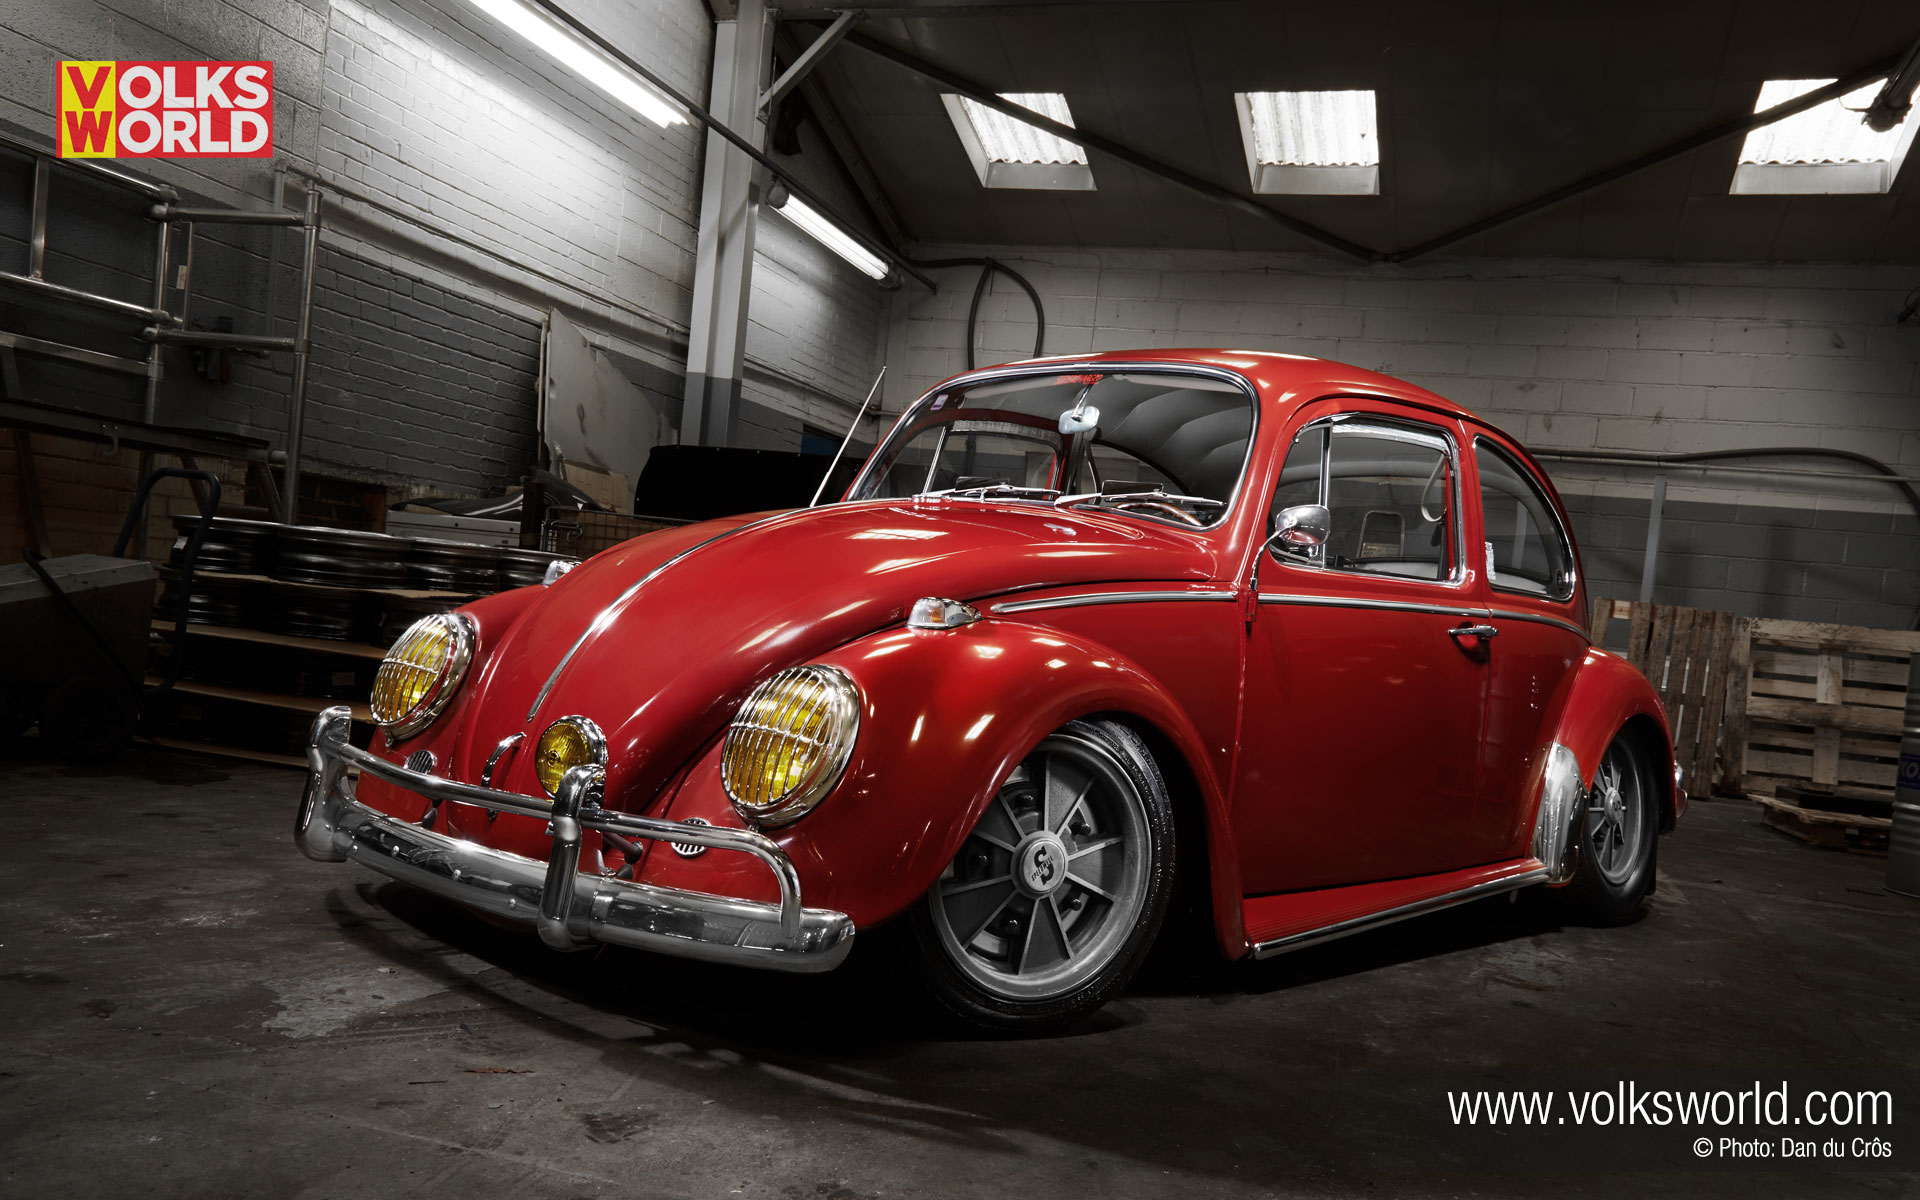 1965 VW Beetle   Best of 2014   VolksWorld